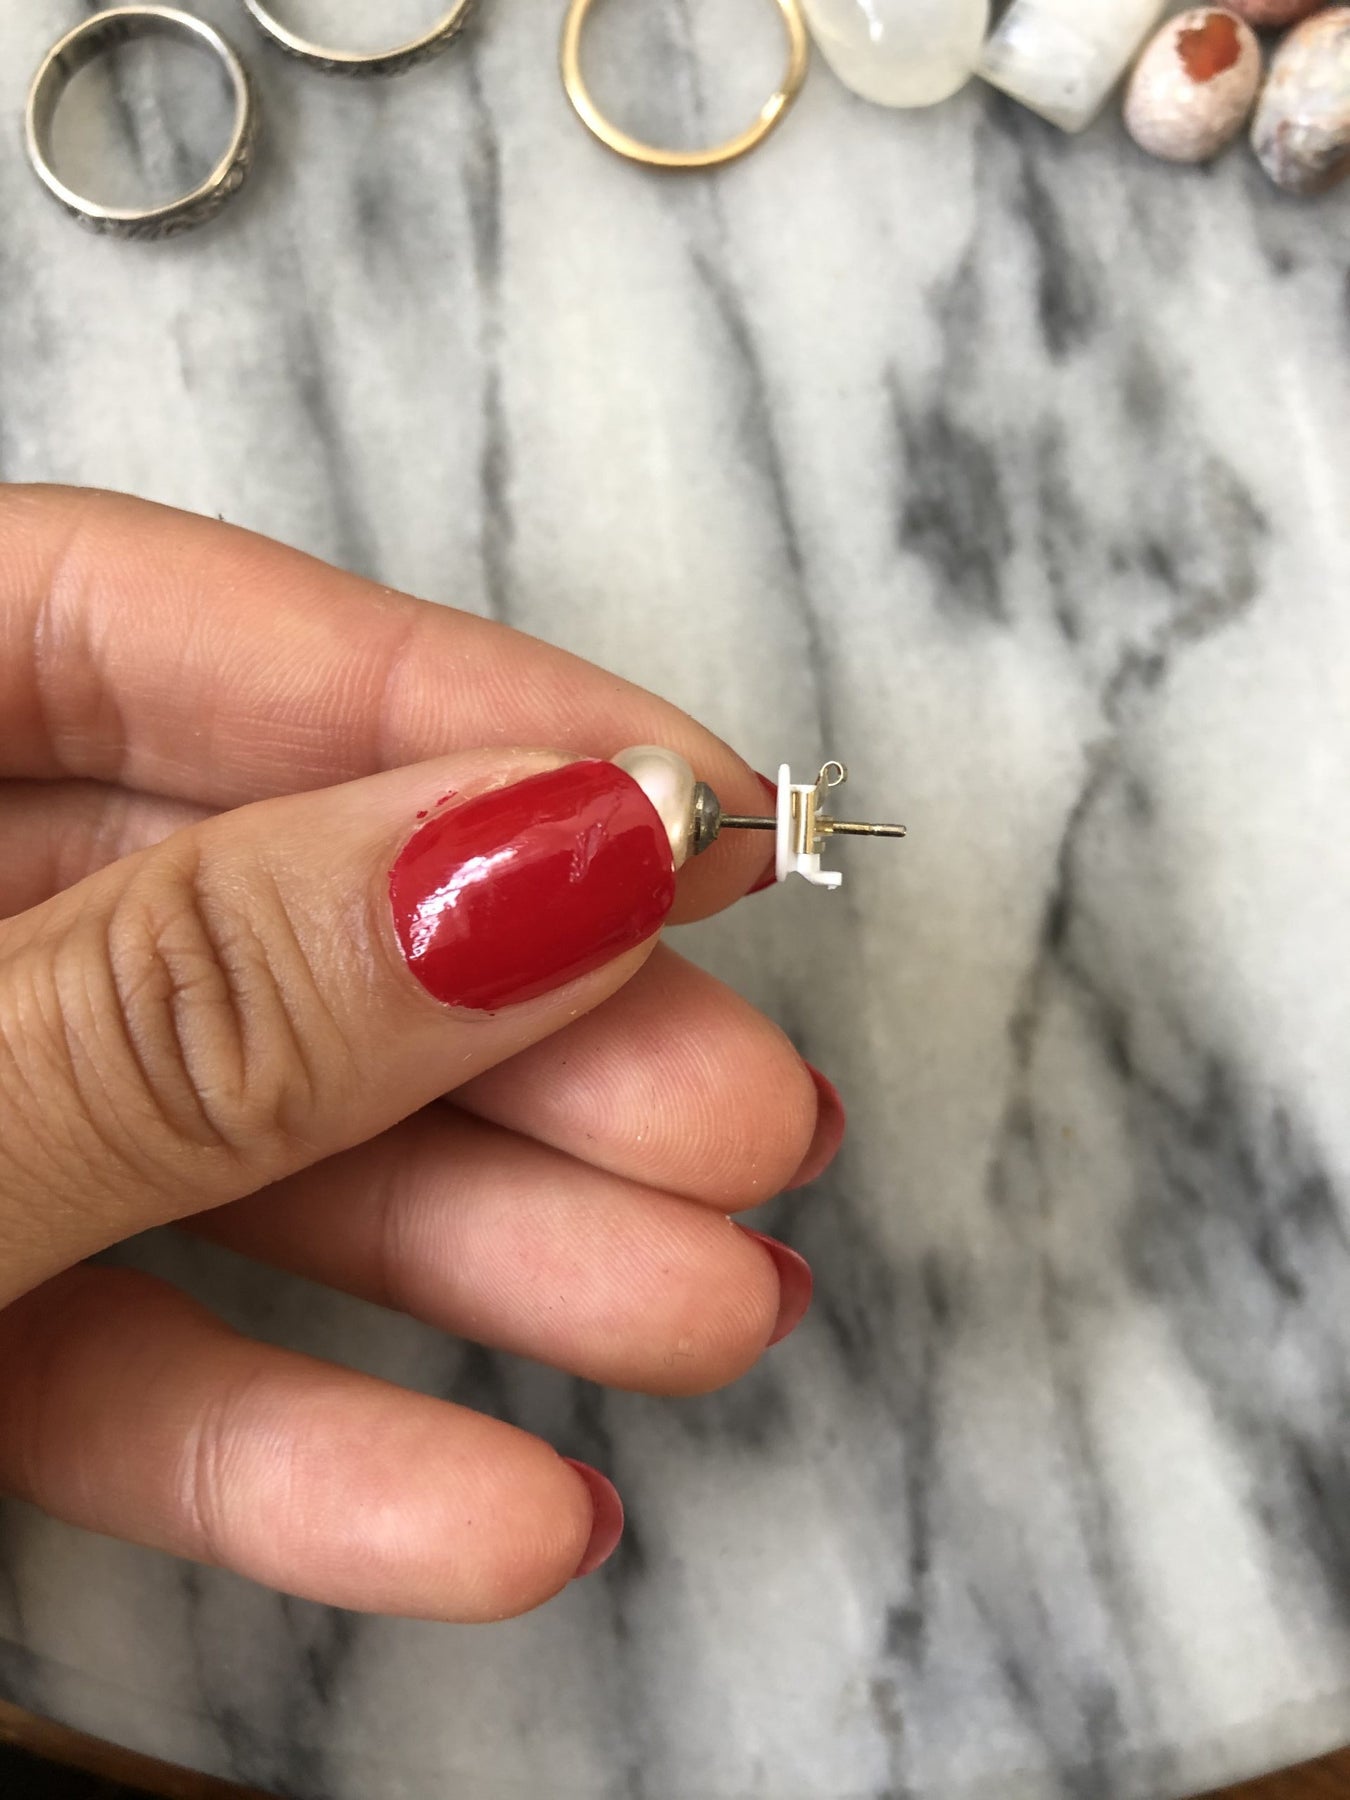 LOX Earring Backings – Violet Moon Jewelry